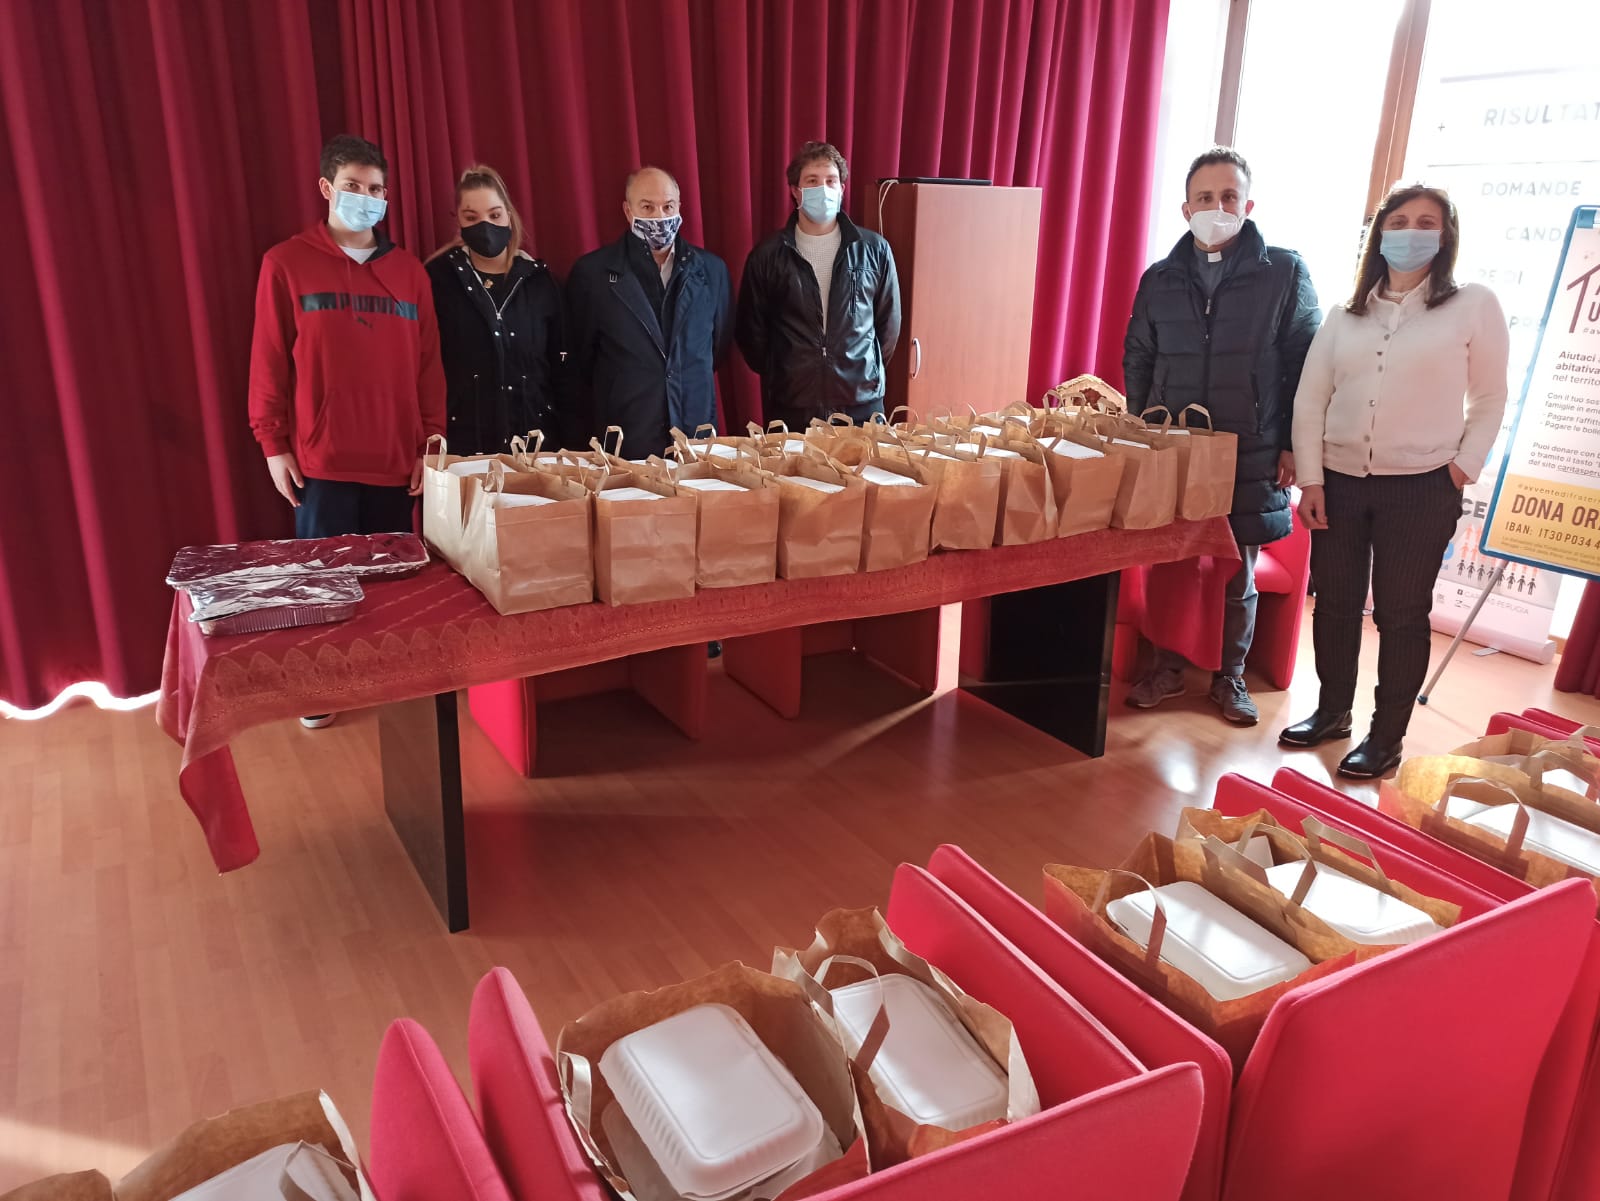 natale 2020 consegna pasti al villaggio della carità pg volontari e ristoratori f2